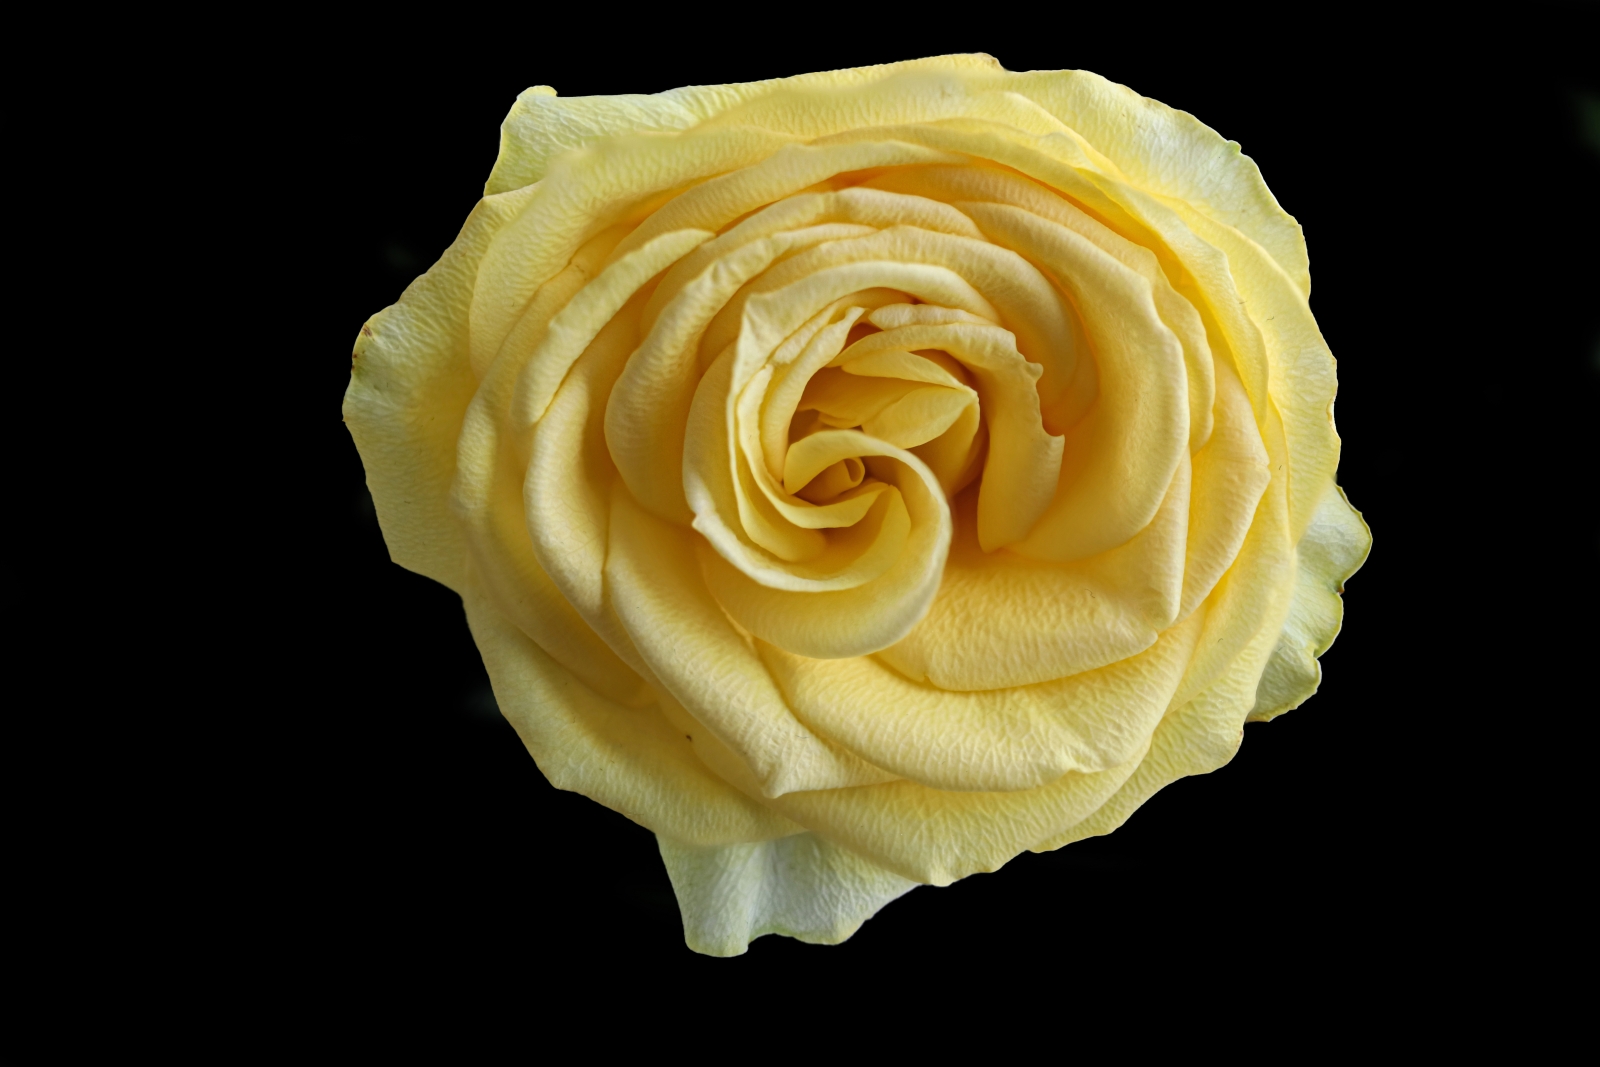 Yellow rose_14_David Holmes